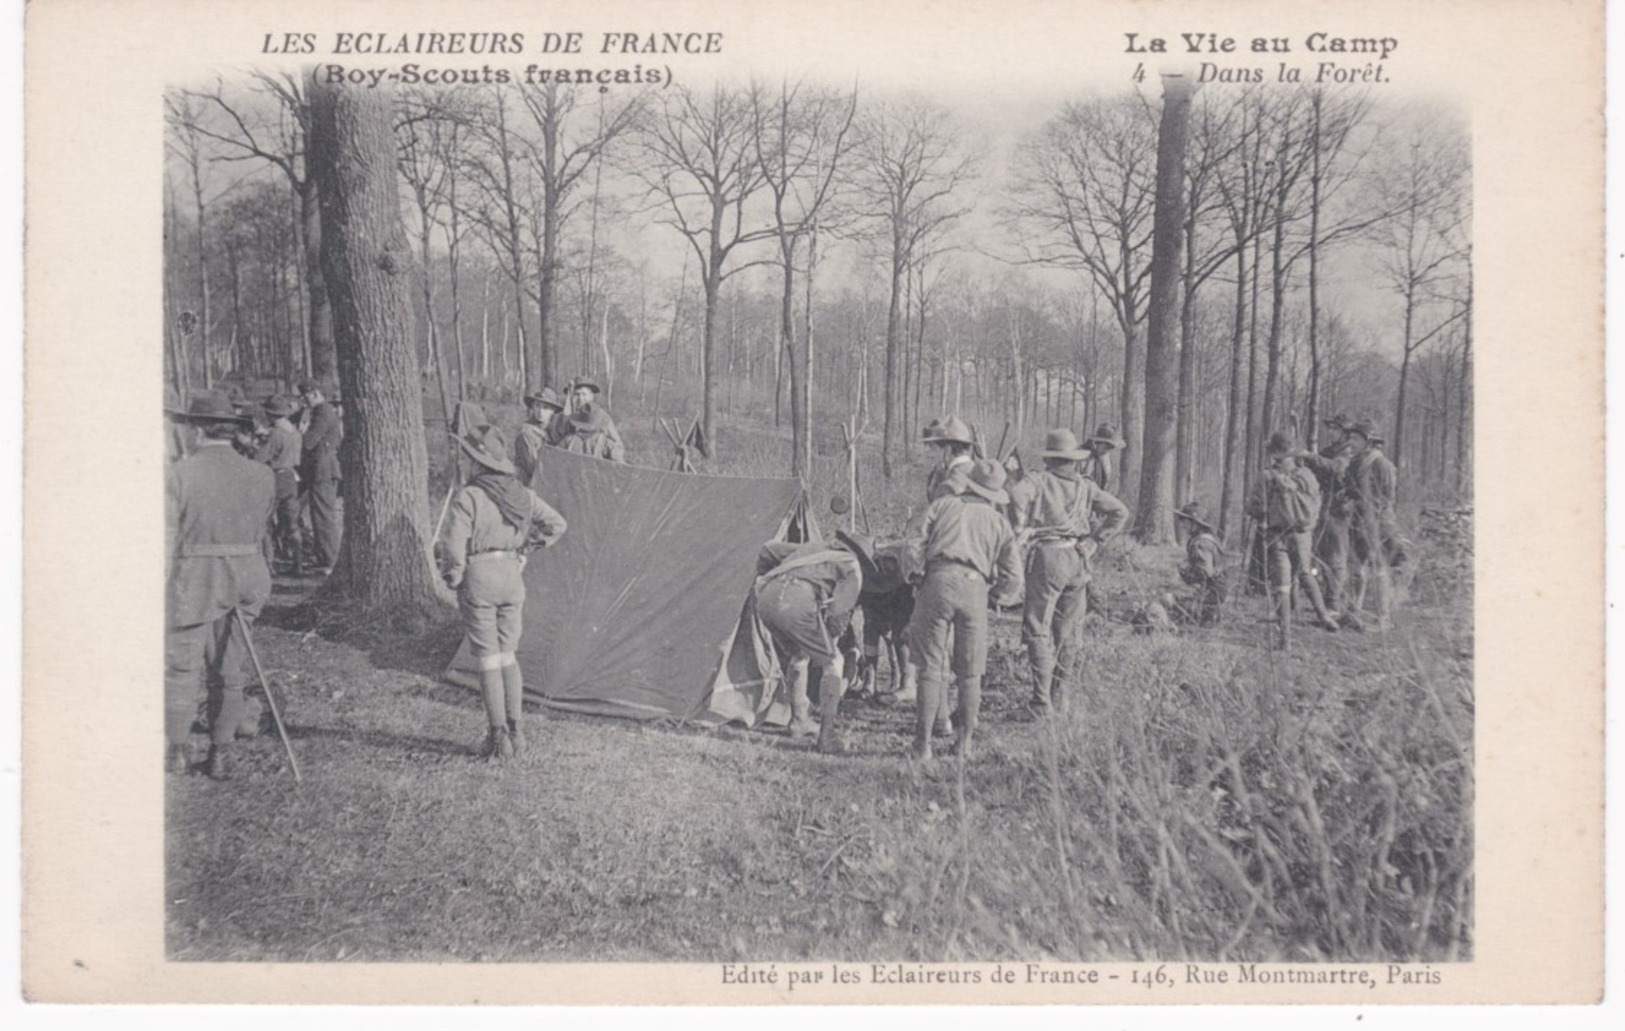 Les Eclaireurs De France - Boy-Scouts Français - La Vie Au Camp - Dans La Forêt - Ed. Eclaireurs, Paris - Pfadfinder-Bewegung